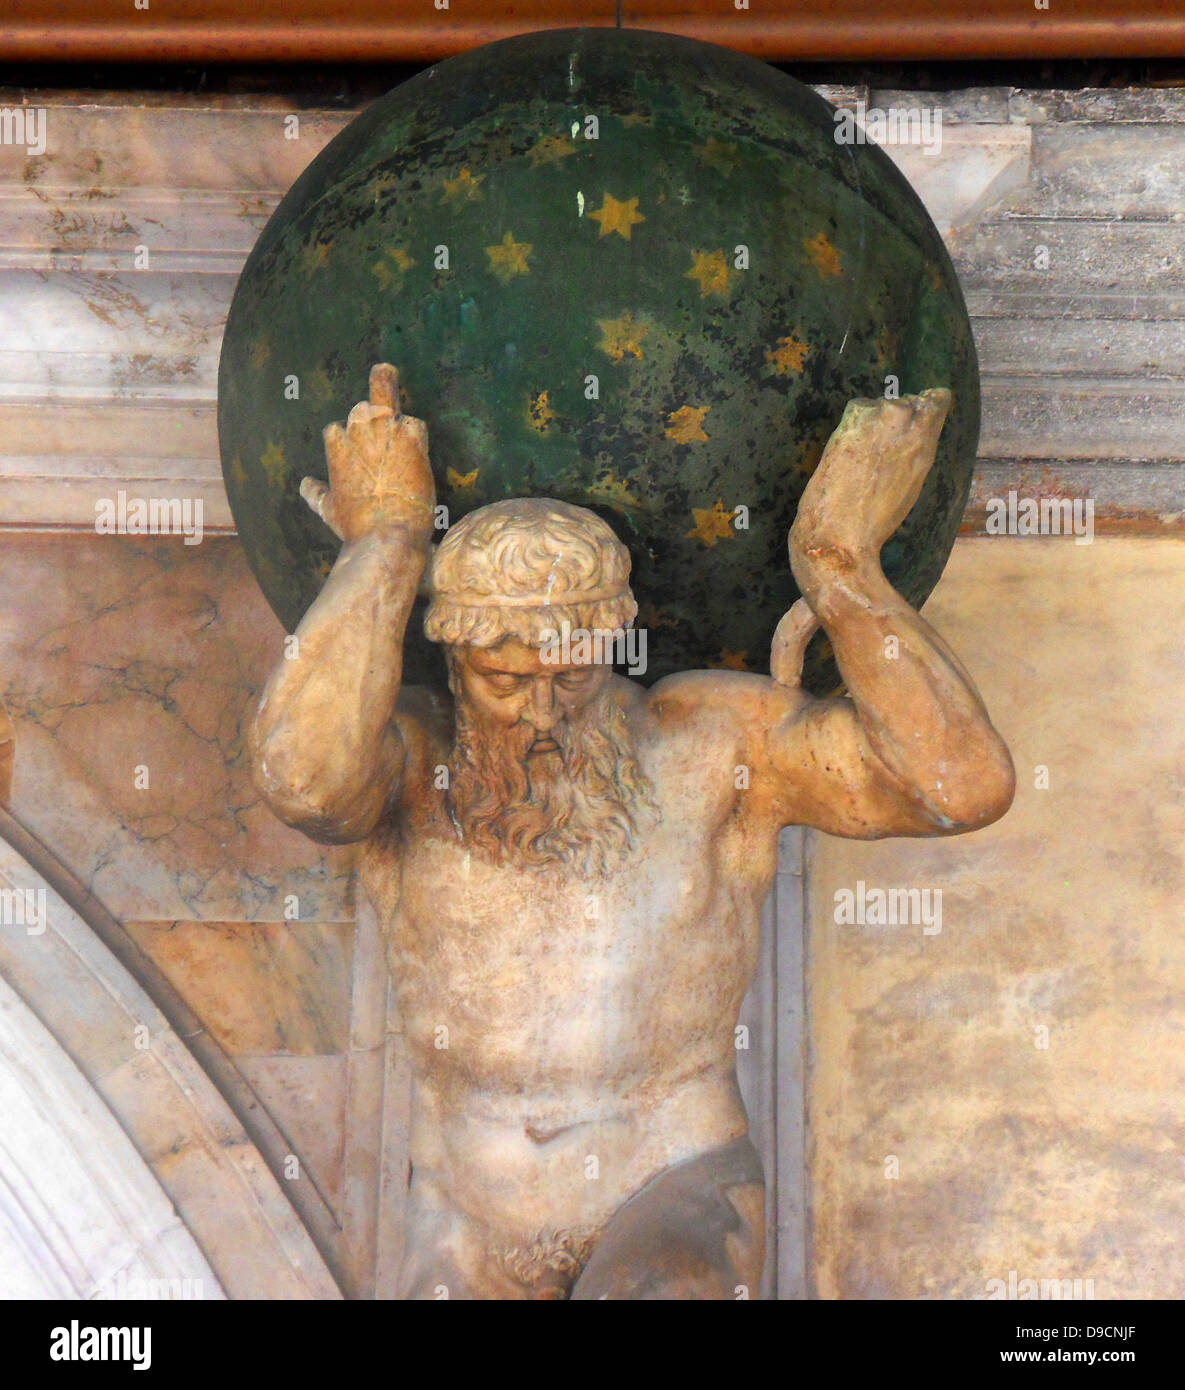 Statue d'Antonio Aspetti, dépeignant sous Atlas le firmament étoilé. situé sur un balcon en terrasse dans la cour intérieure du palais des Doges, Venise. Construit en style gothique vénitien, le palais était la résidence du Doge de Venise (l'autorité suprême de l'rublic de Venise). Il est maintenant ouvert comme un musée. Banque D'Images